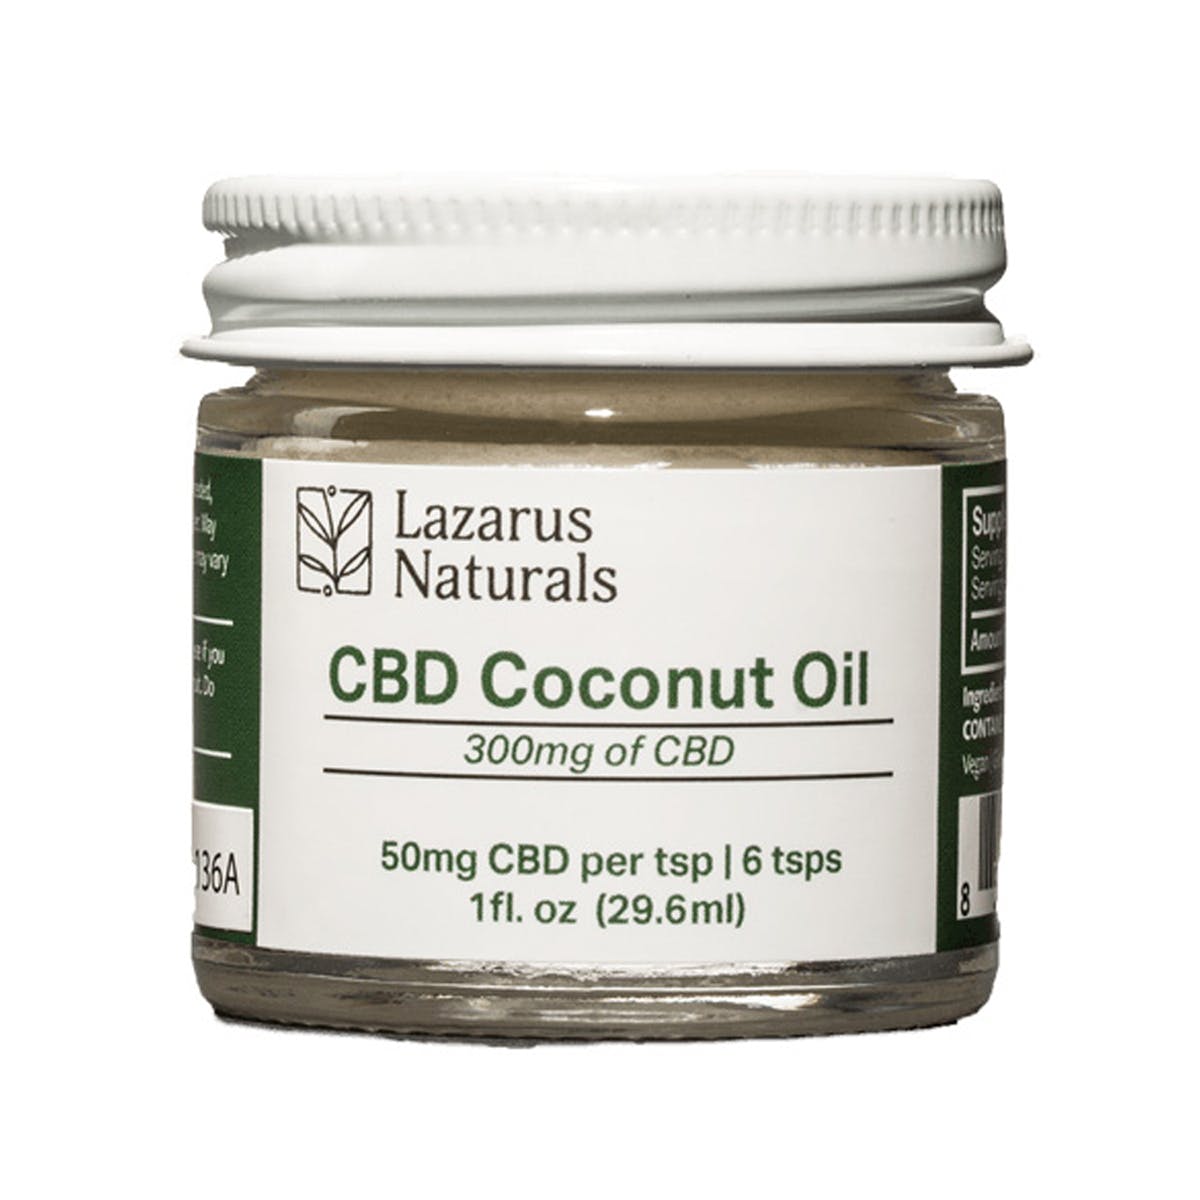 edible-lazarus-naturals-1oz-cbd-infused-coconut-oil-300mg